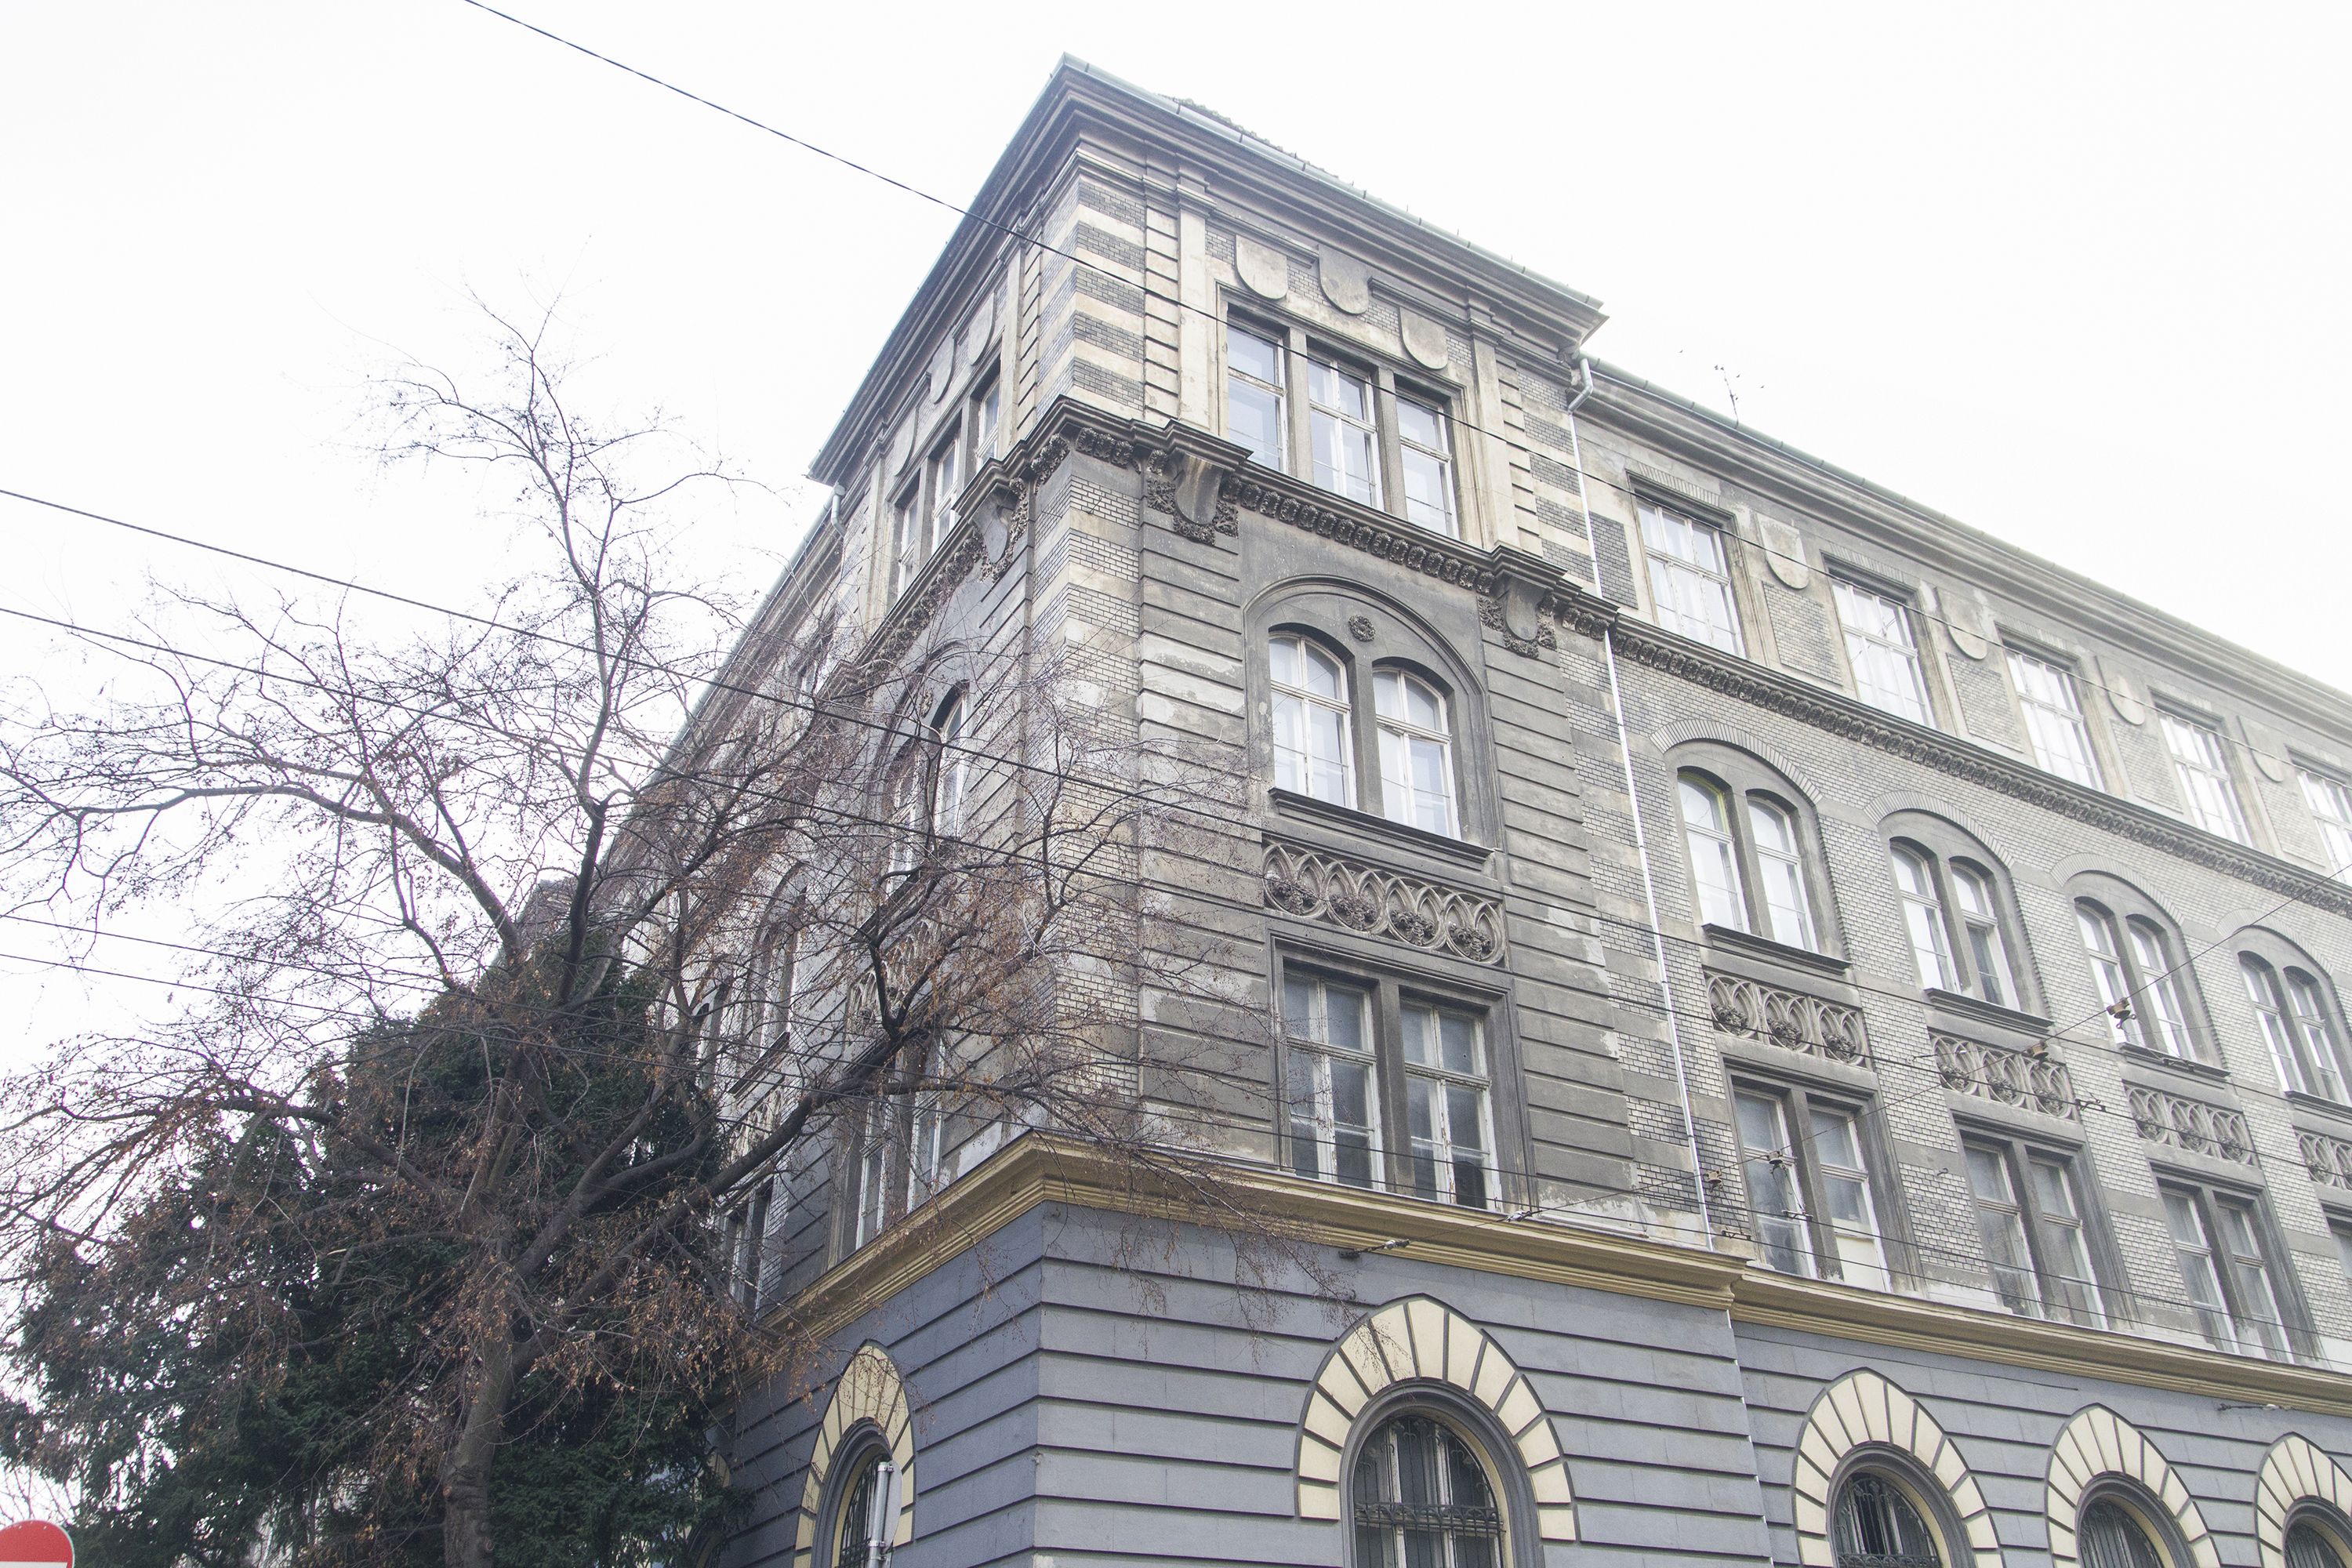 A Budapesti Vendéglátóipari és Humán Szakképzési Centrum Raoul Wallenberg iskoláinak felújítása